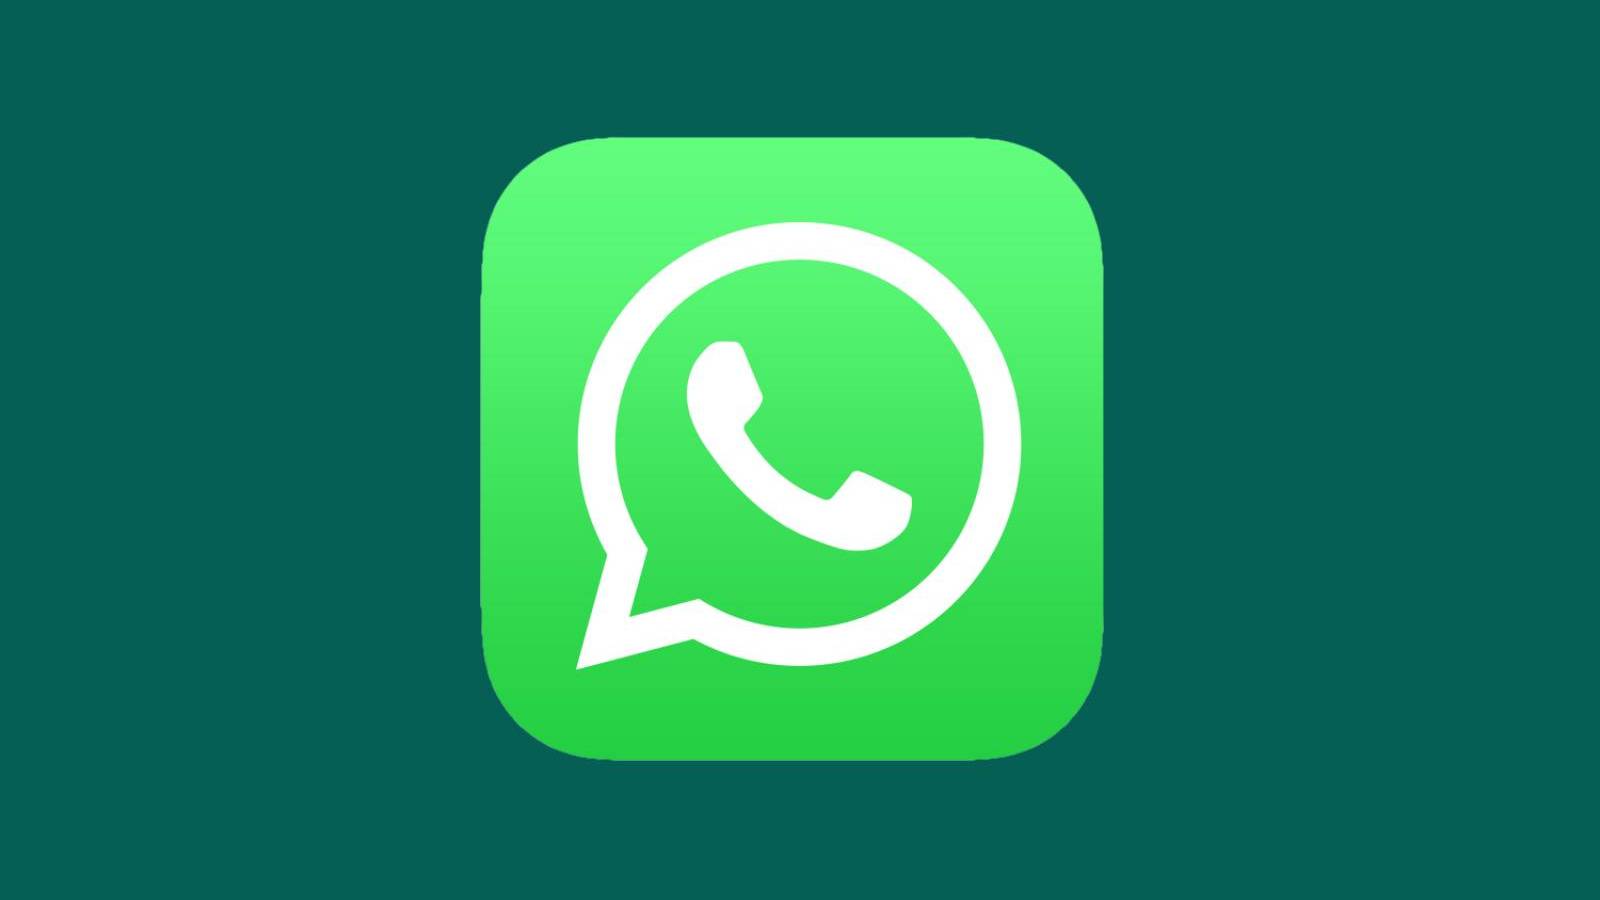 WhatsApp-Risiko